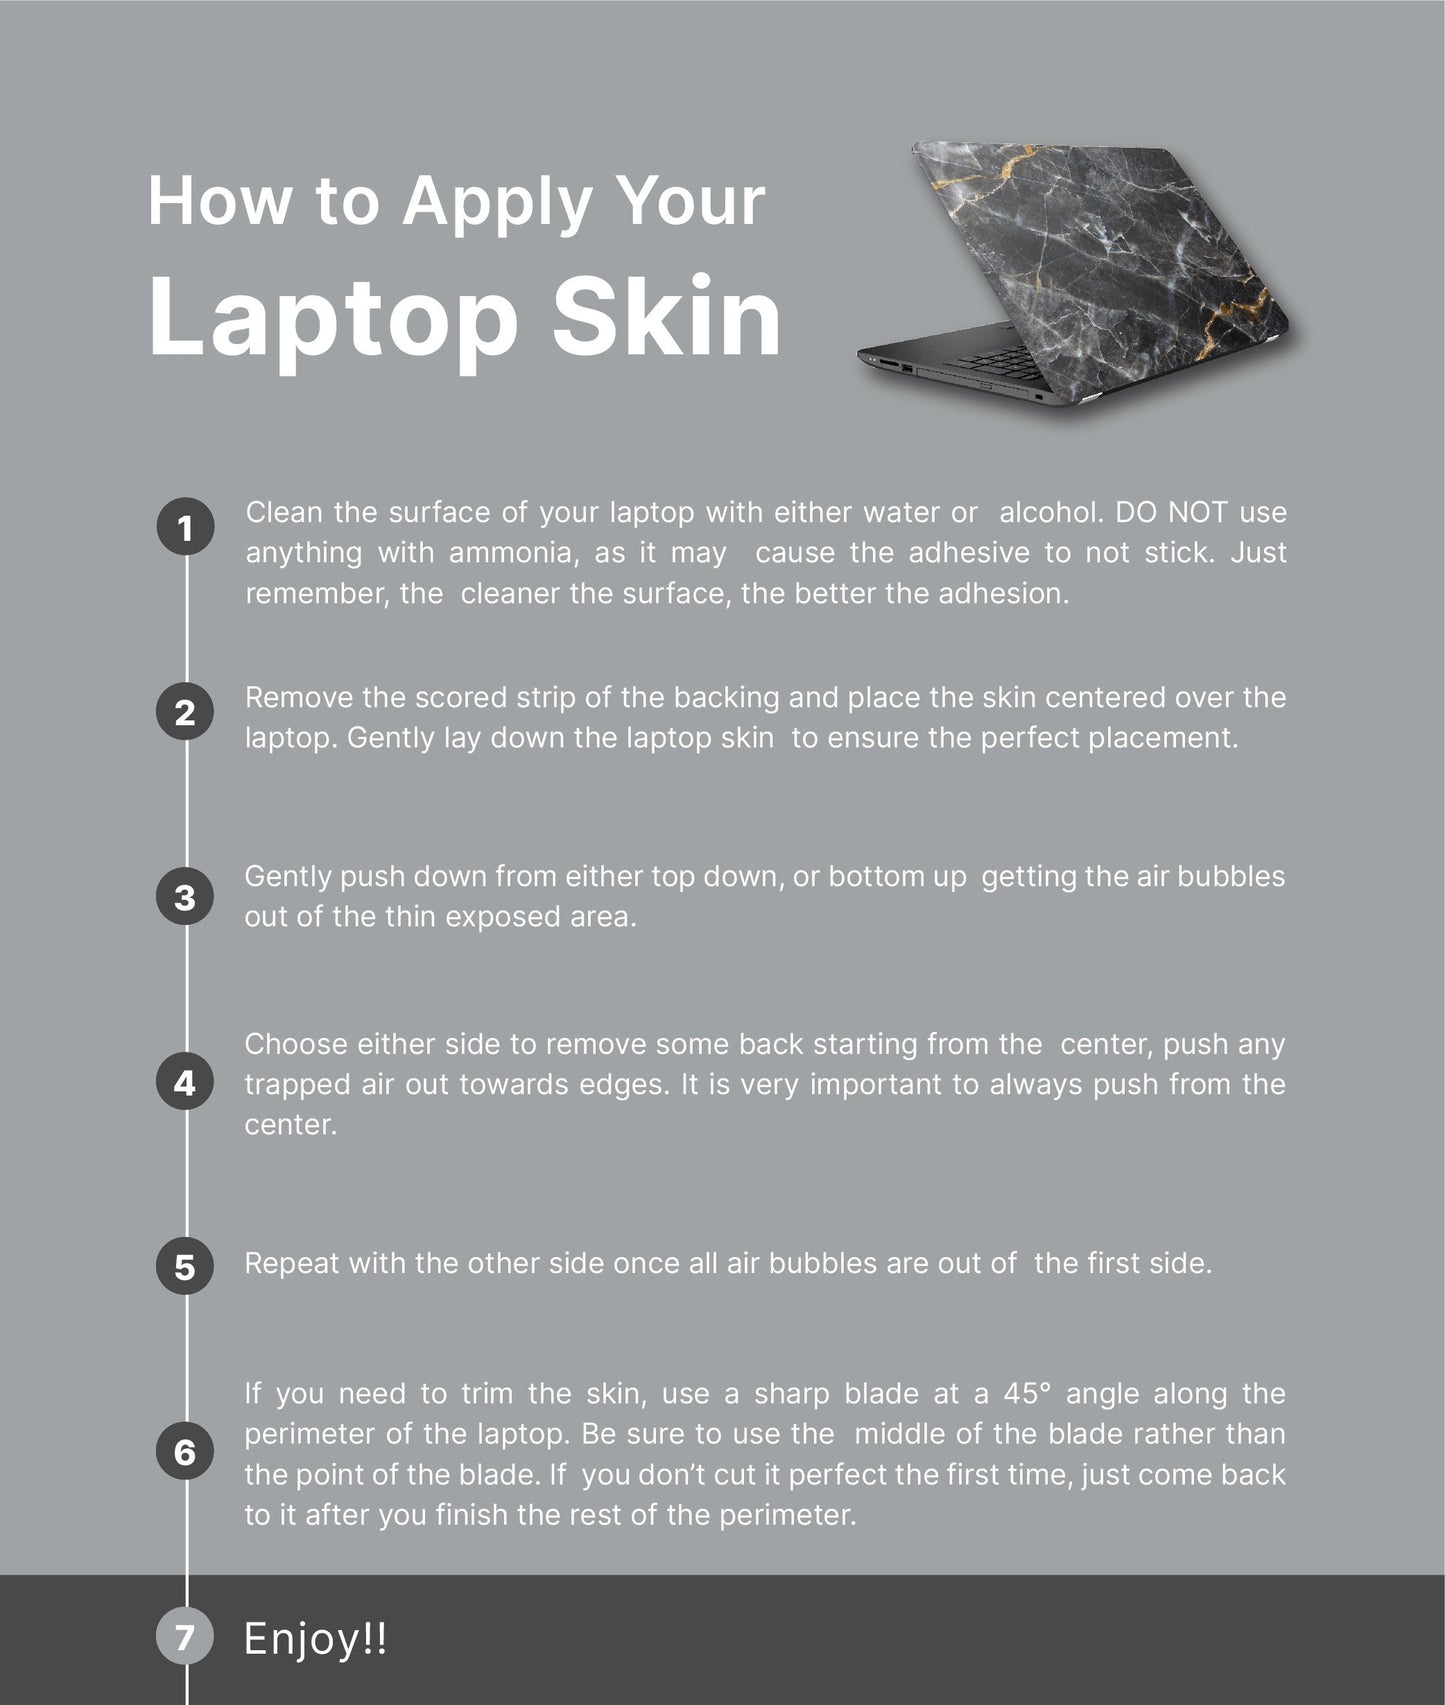 Mountain Sunset Laptop Skin, Laptop Cover, Laptop Skins, Removable Laptop Skins, Laptop Decal, Customized Laptop Skin, Laptop Stickers 319